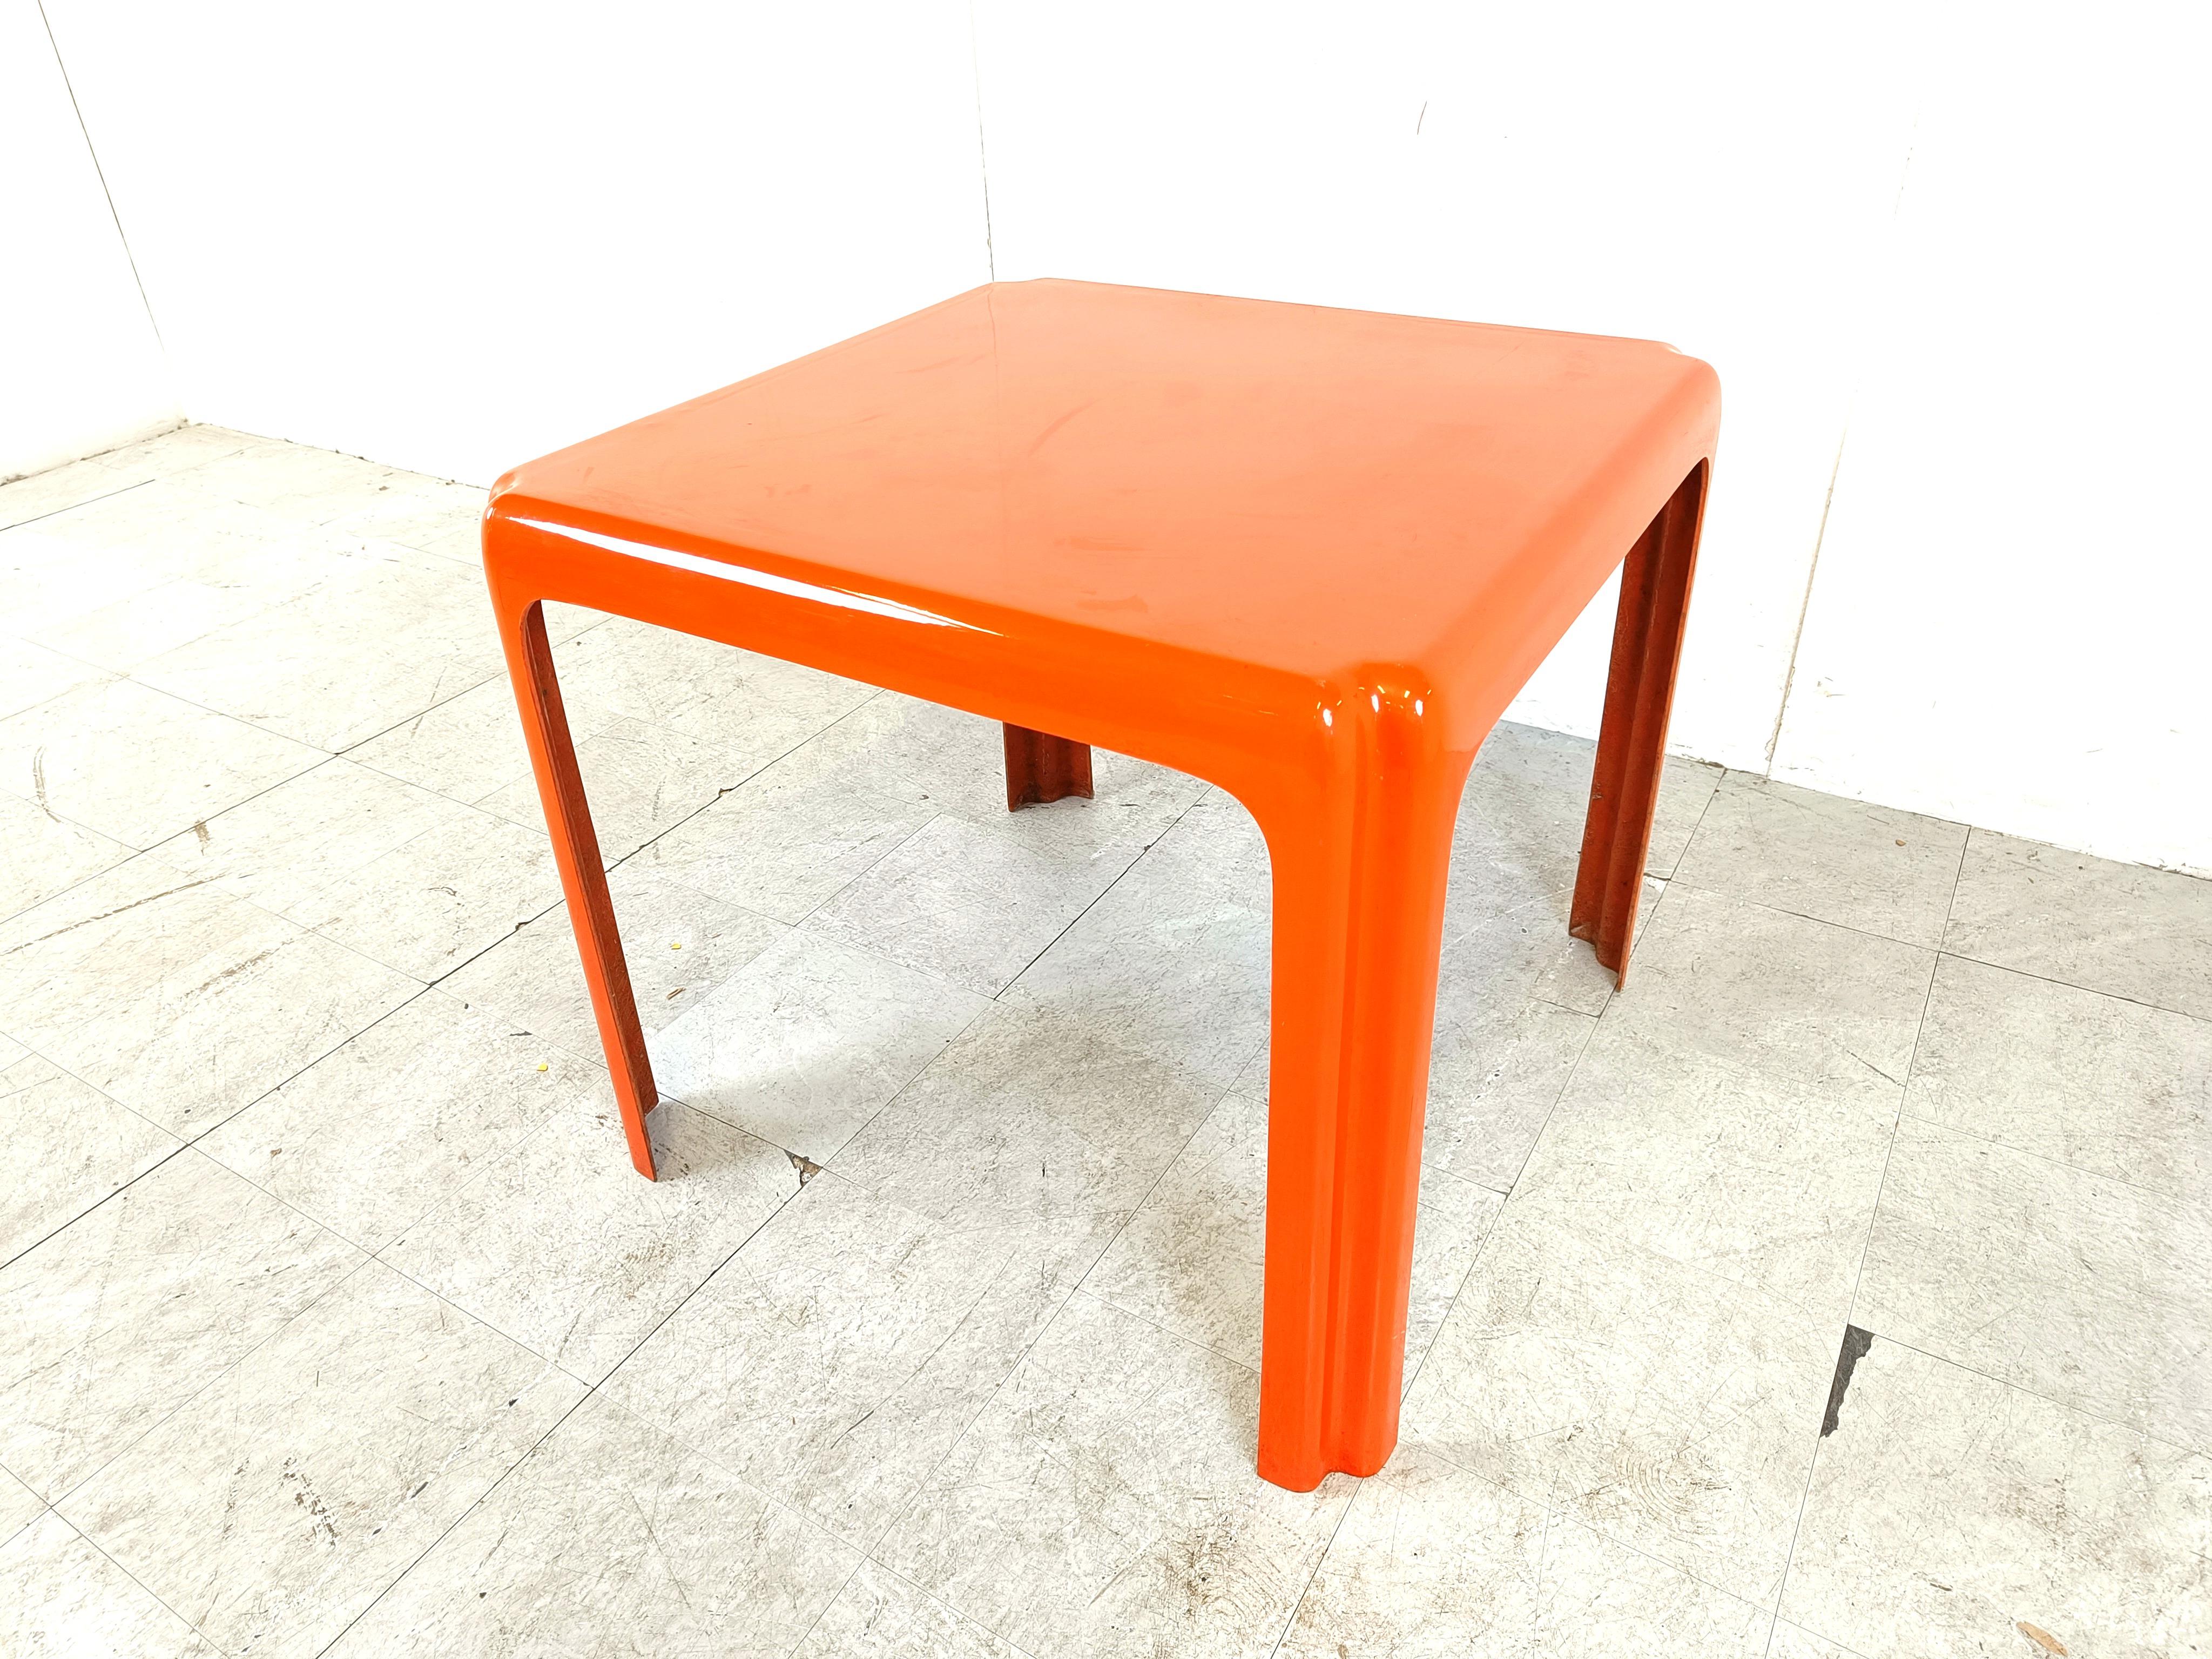 Original seventies space age kitchen table or side table made from fiberglass.

Une belle pièce d'époque avec une couleur orange flashy.

Design/One

1970s 

Hauteur : 73 cm
Largeur x profondeur : 80cm

Réf. : 203055